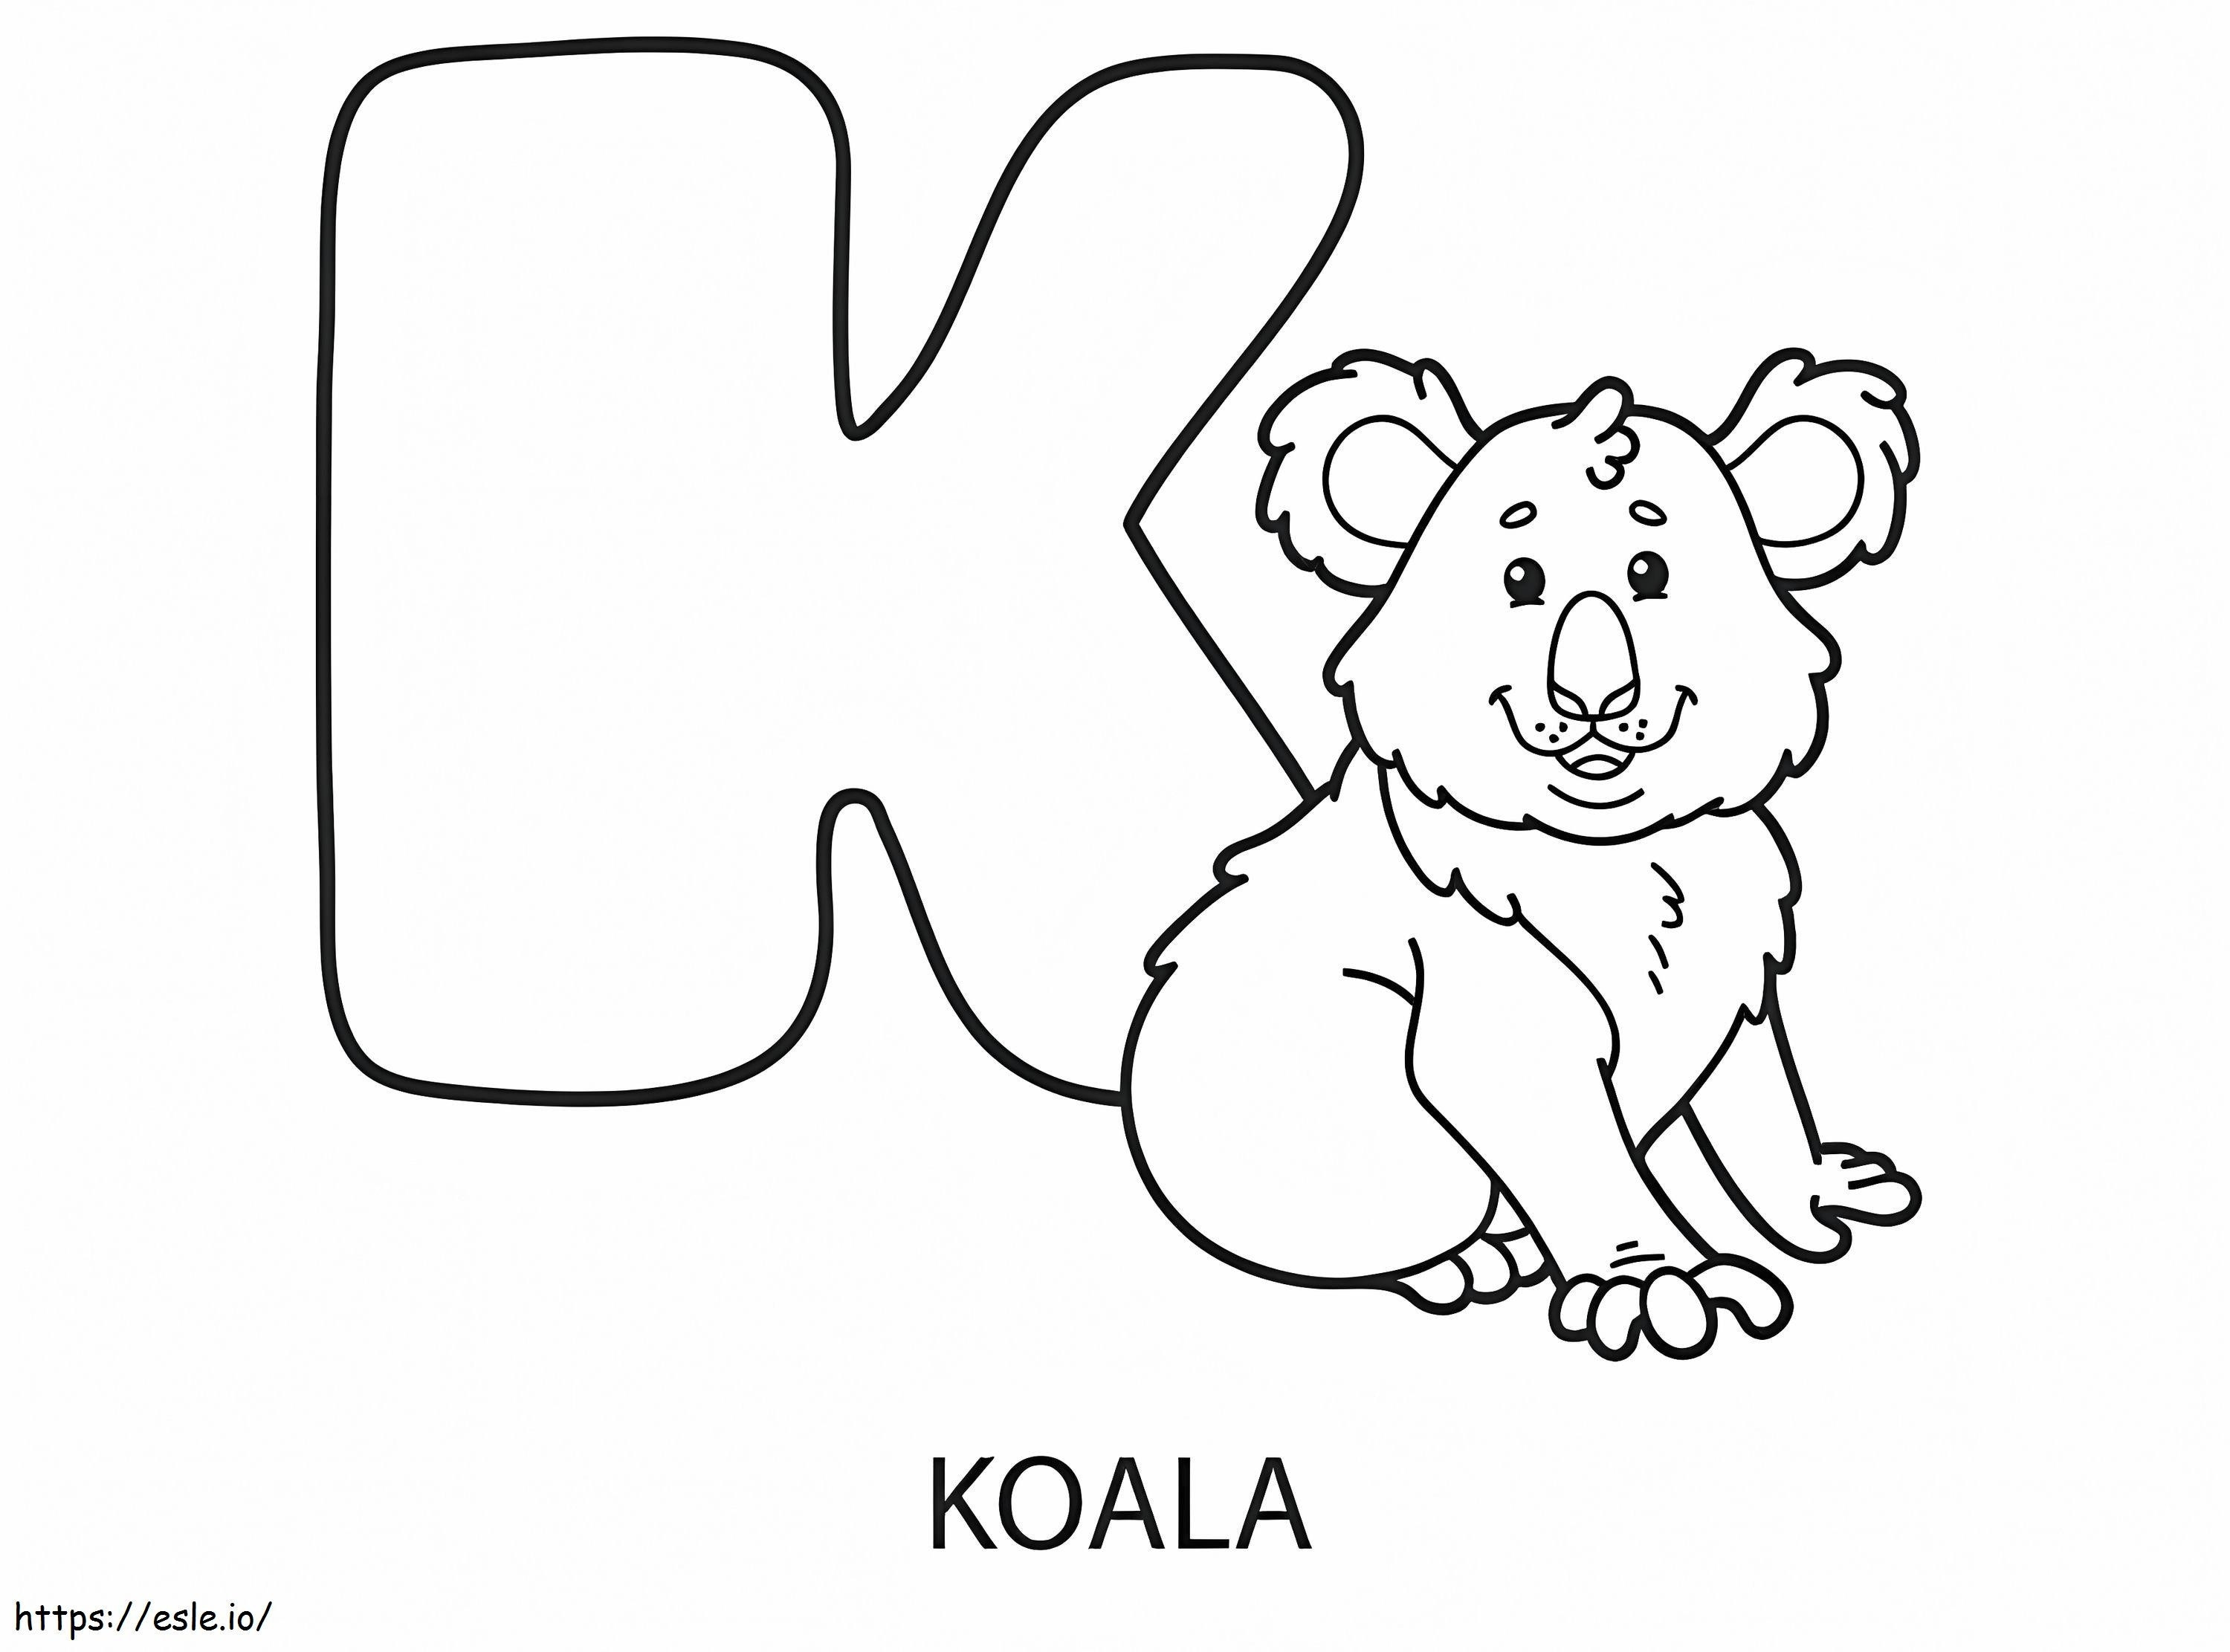 Letra K para Koala para colorear